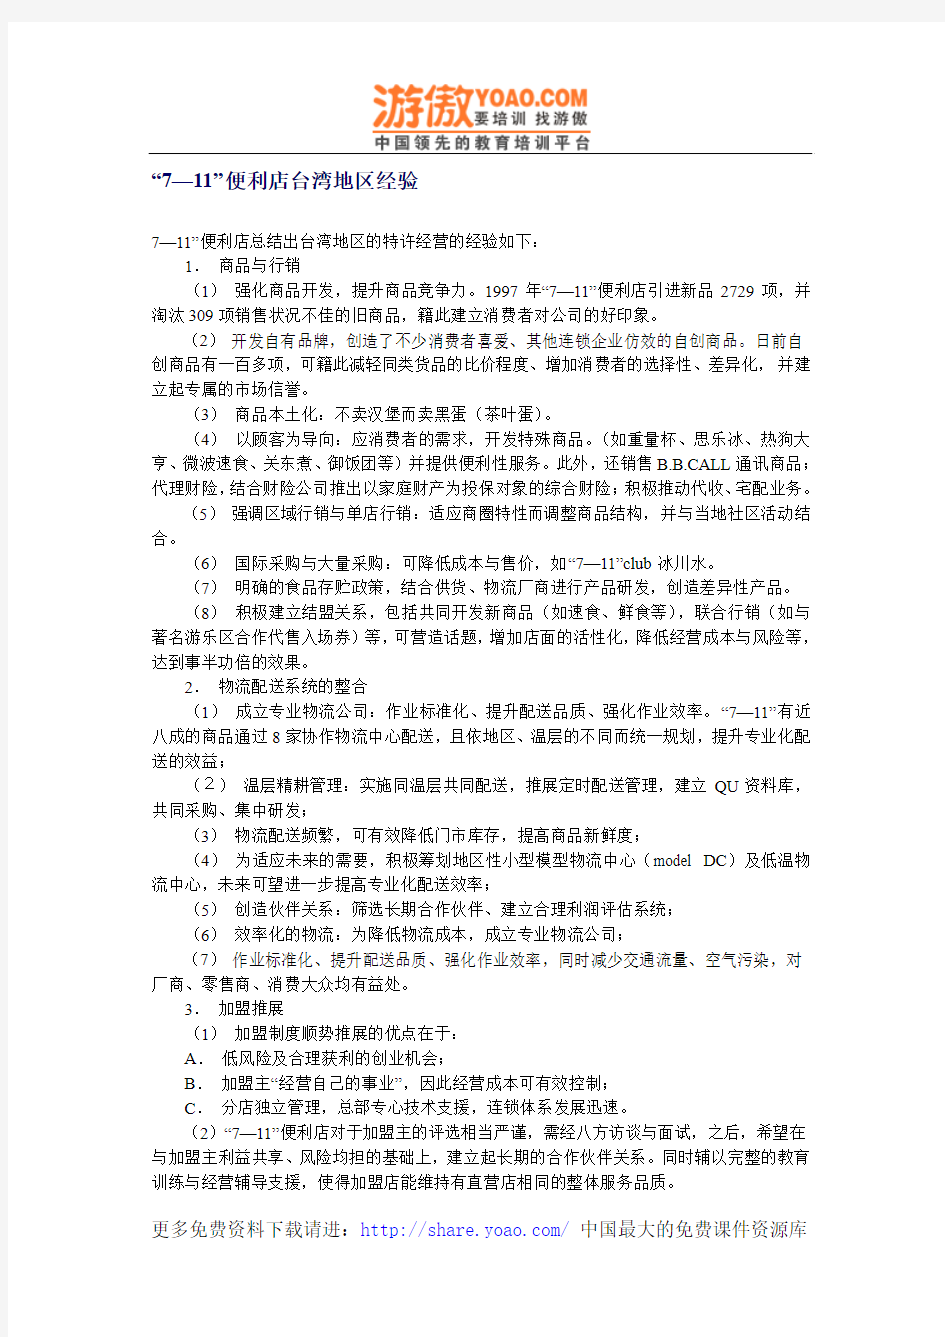 7-11便利店台湾地区经验(DOC 1页)